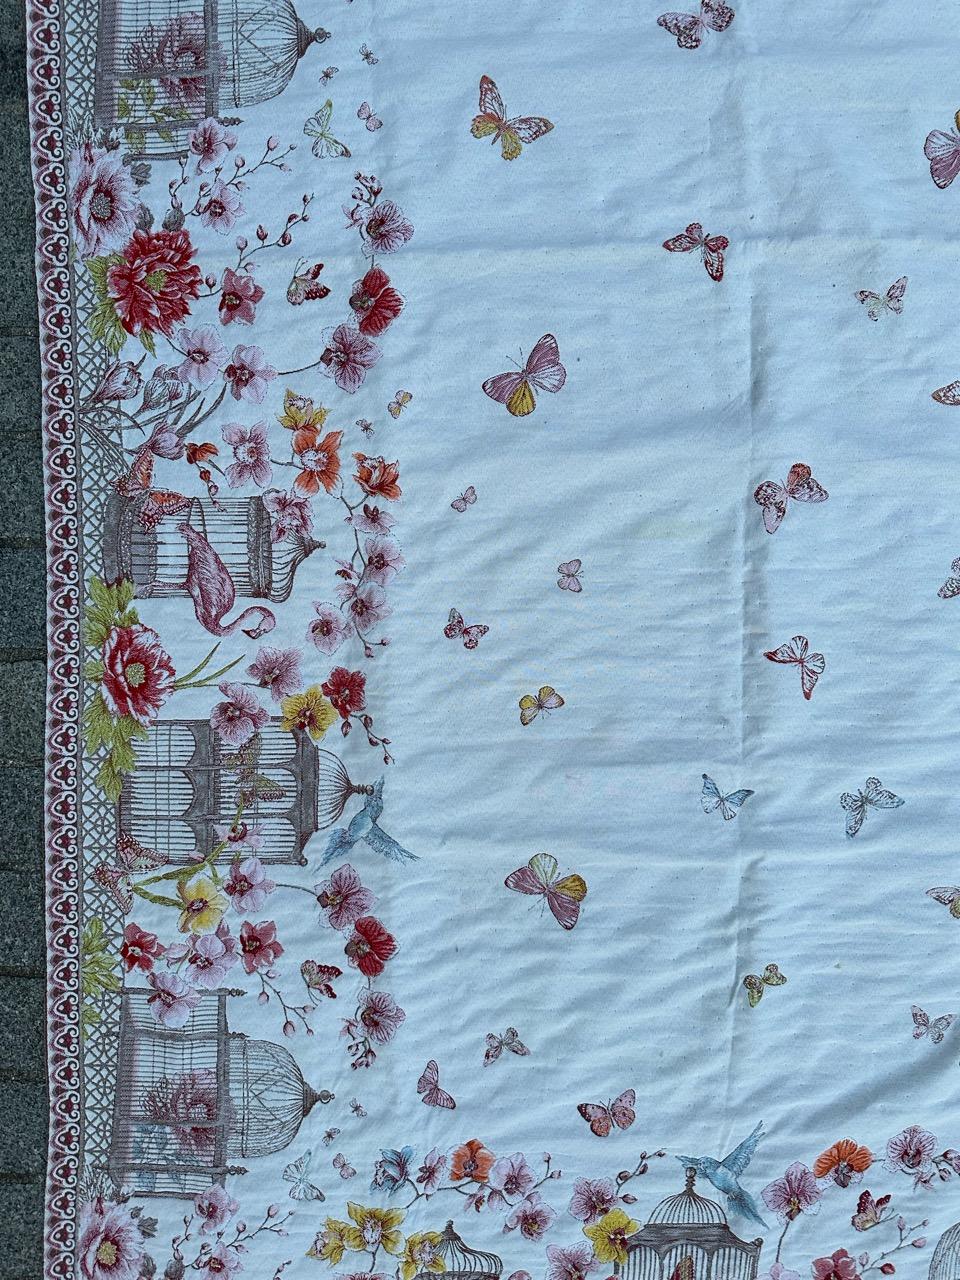 Jolie tapisserie vintage française de style Aubusson ou couverture de lit ou nappe, avec de beaux motifs floraux et de jolies couleurs claires, tissée avec la fabrication mécanique Jaquar avec de la laine et du coton.

✨✨✨
